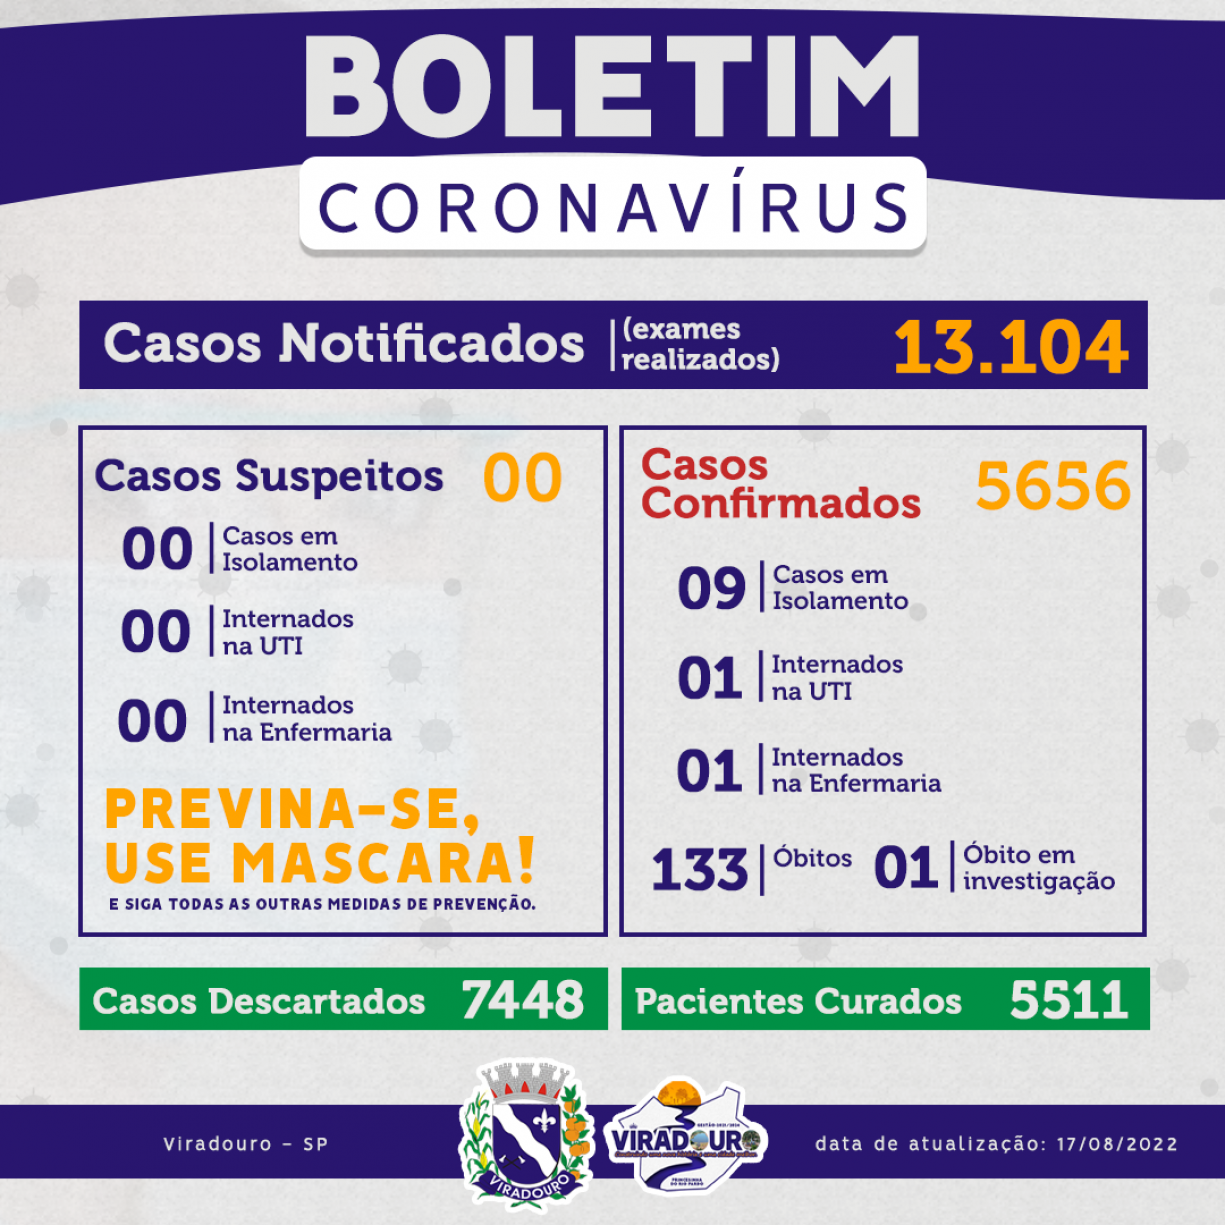 CORONAVÍRUS: BOLETIM EPIDEMIOLÓGICO (ATUALIZAÇÃO 17/08/2022)